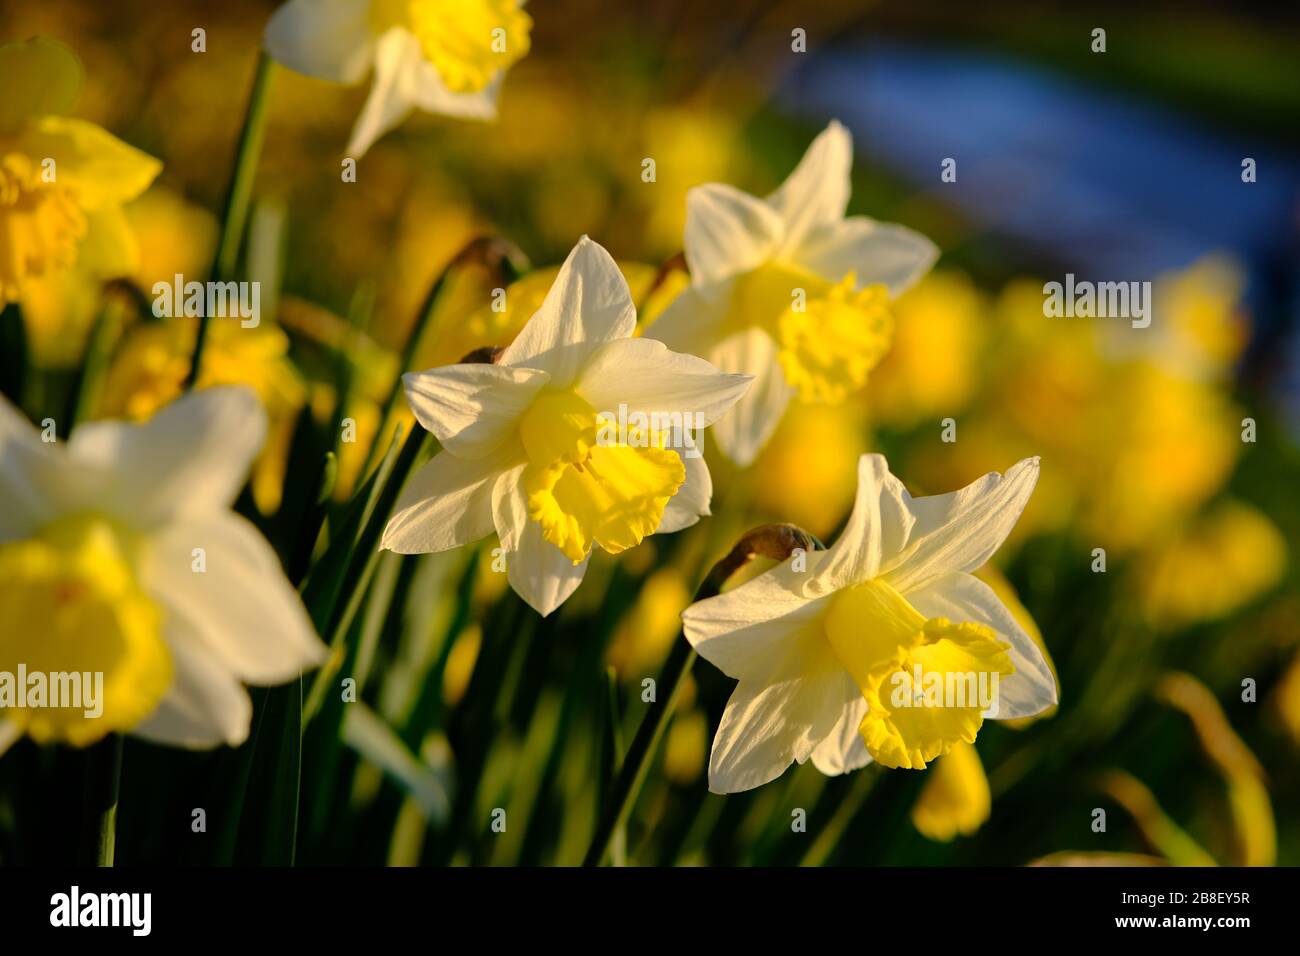 La tradicional flor de narciso con pétalos amarillos y blancos. Las narciso son las flores de primavera más hermosas. Tomado en Staffordshire, Reino Unido. Foto de stock